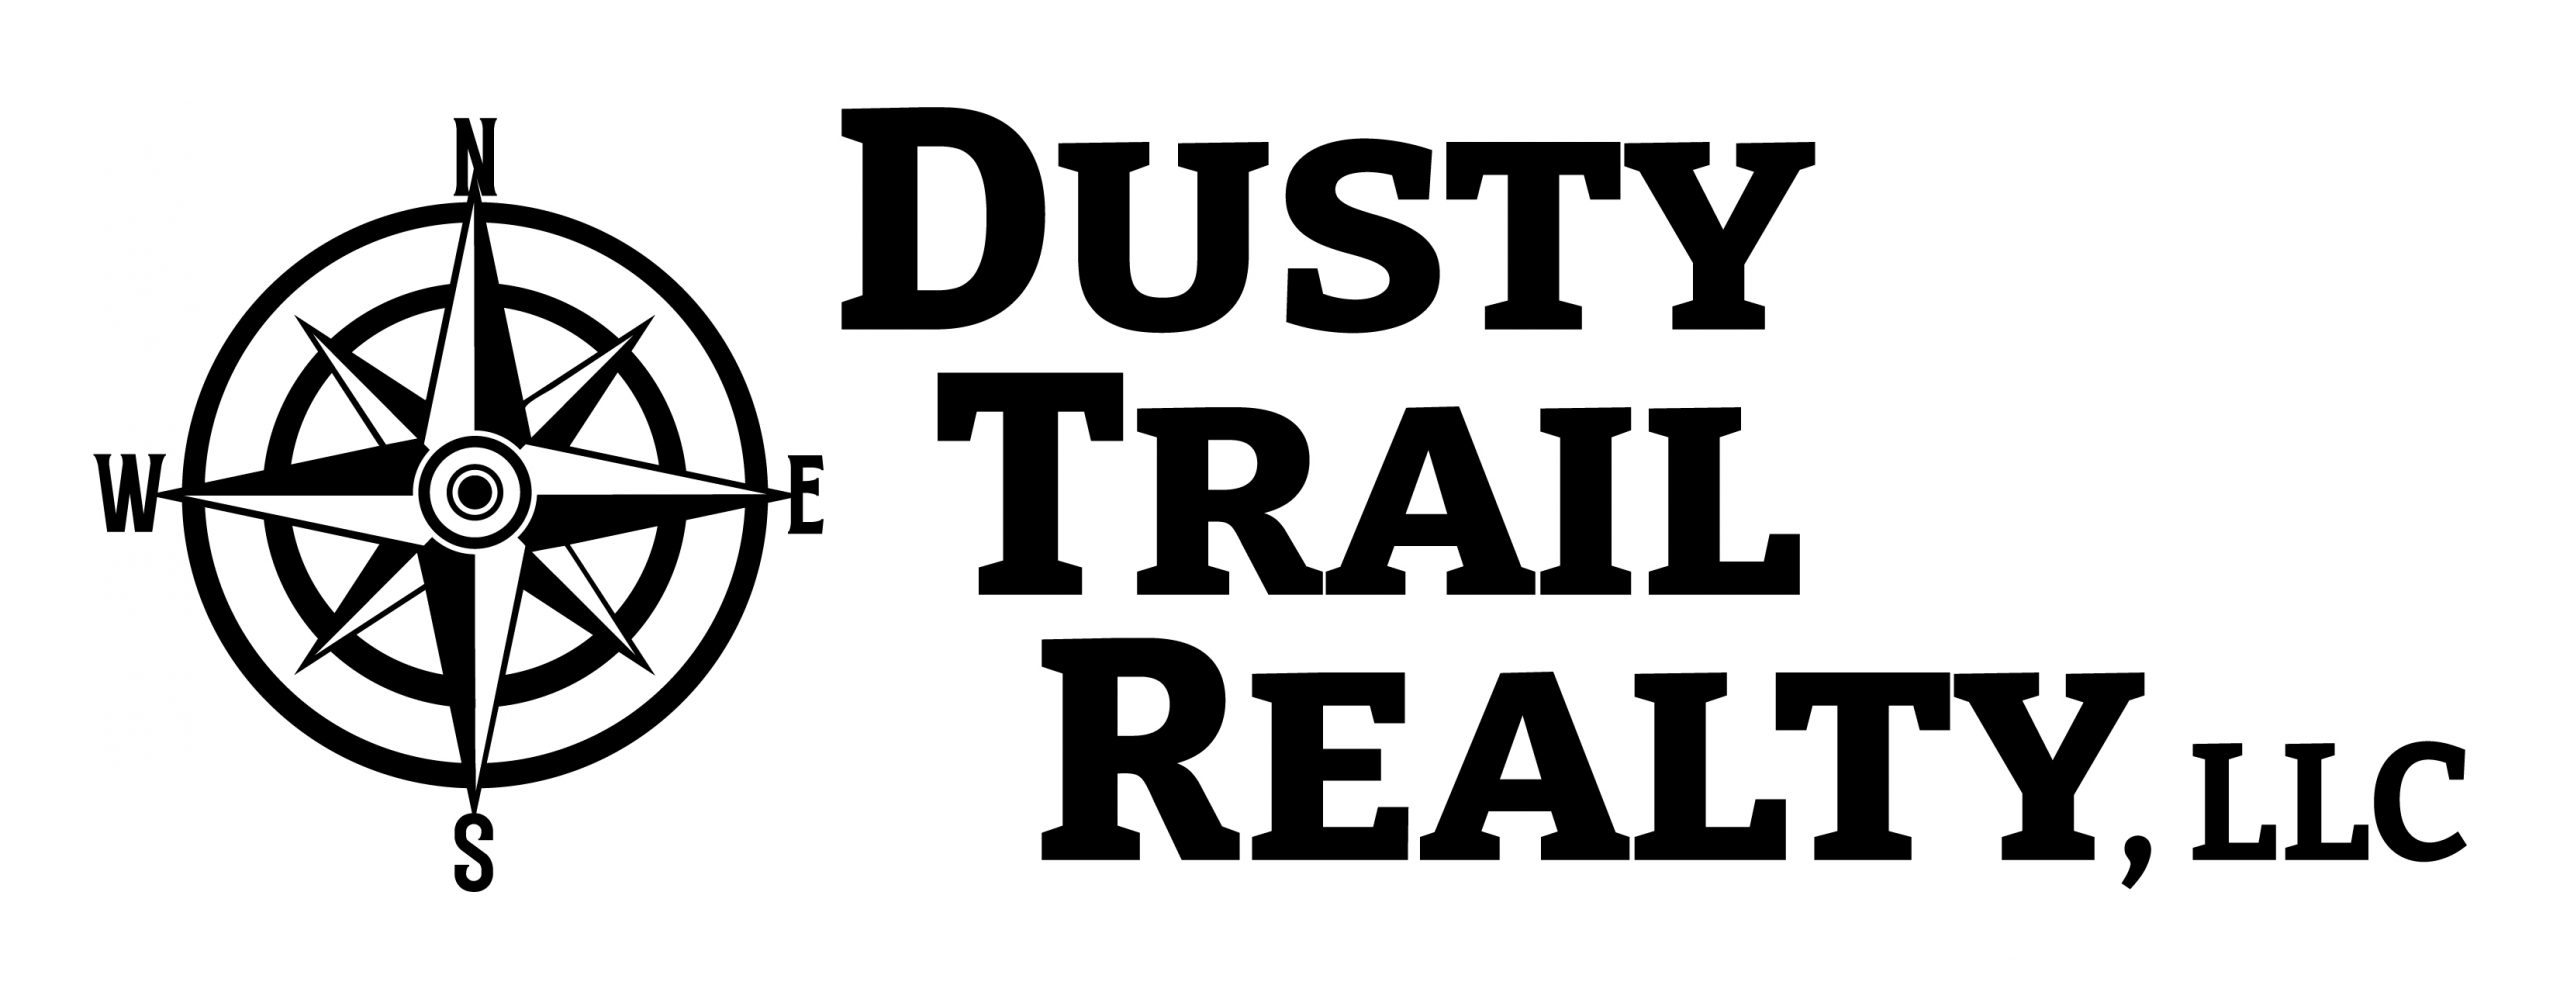 Dusty Trail Realty LLC